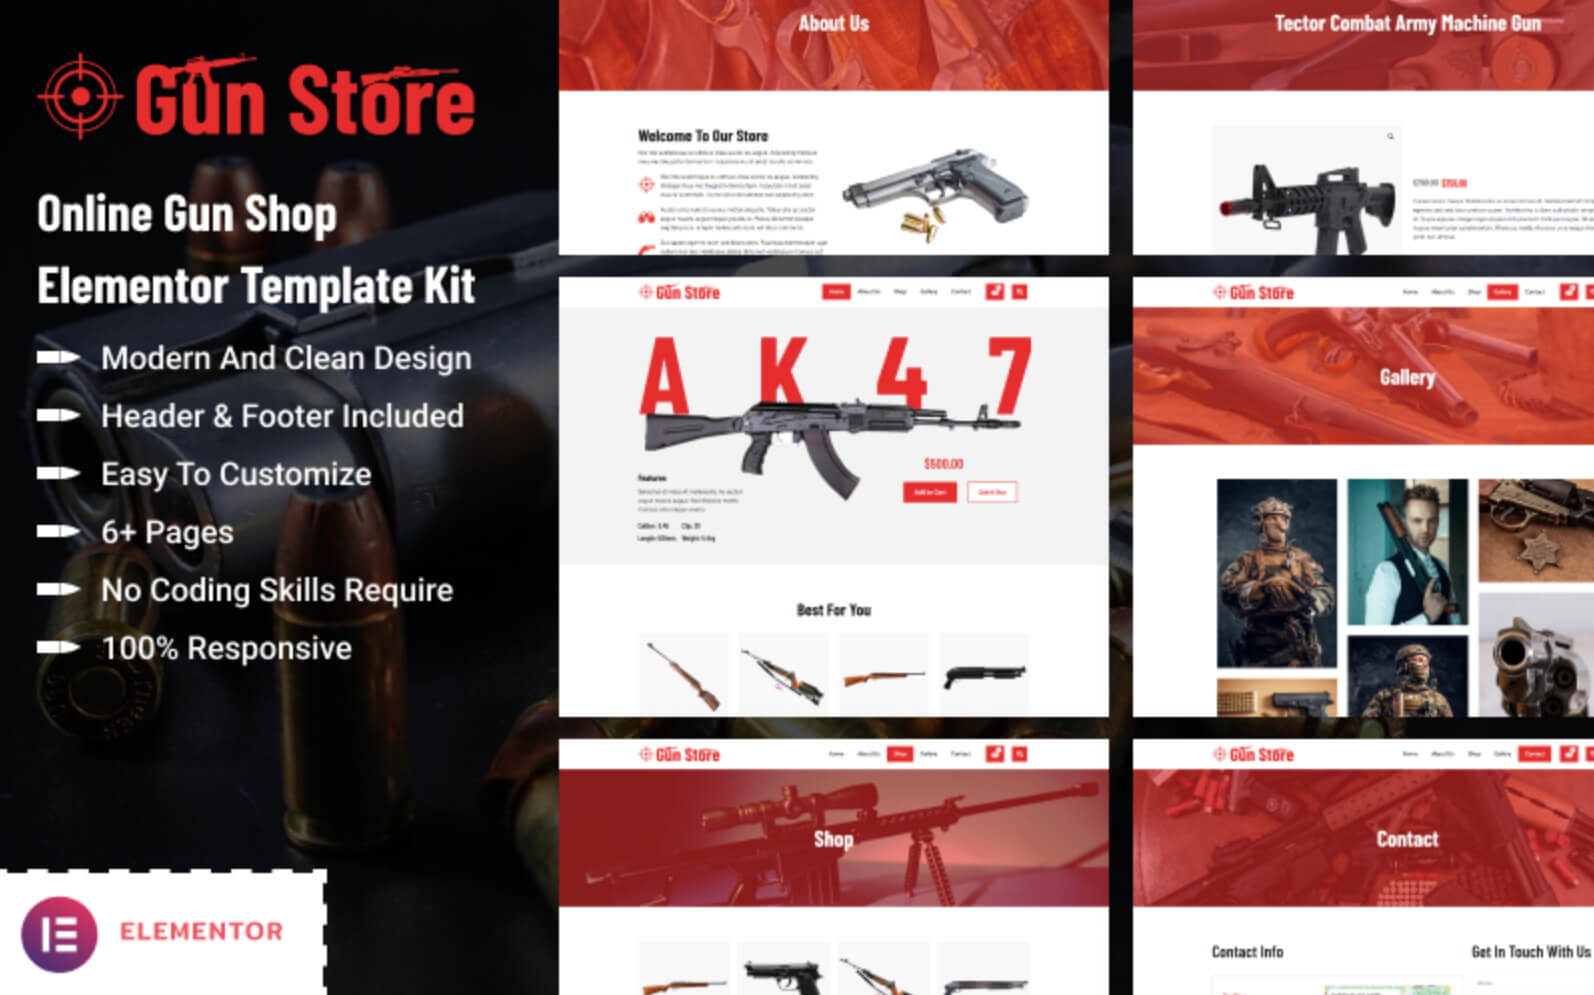 Gun Store - Online Gun Shop Elementor Template Kit